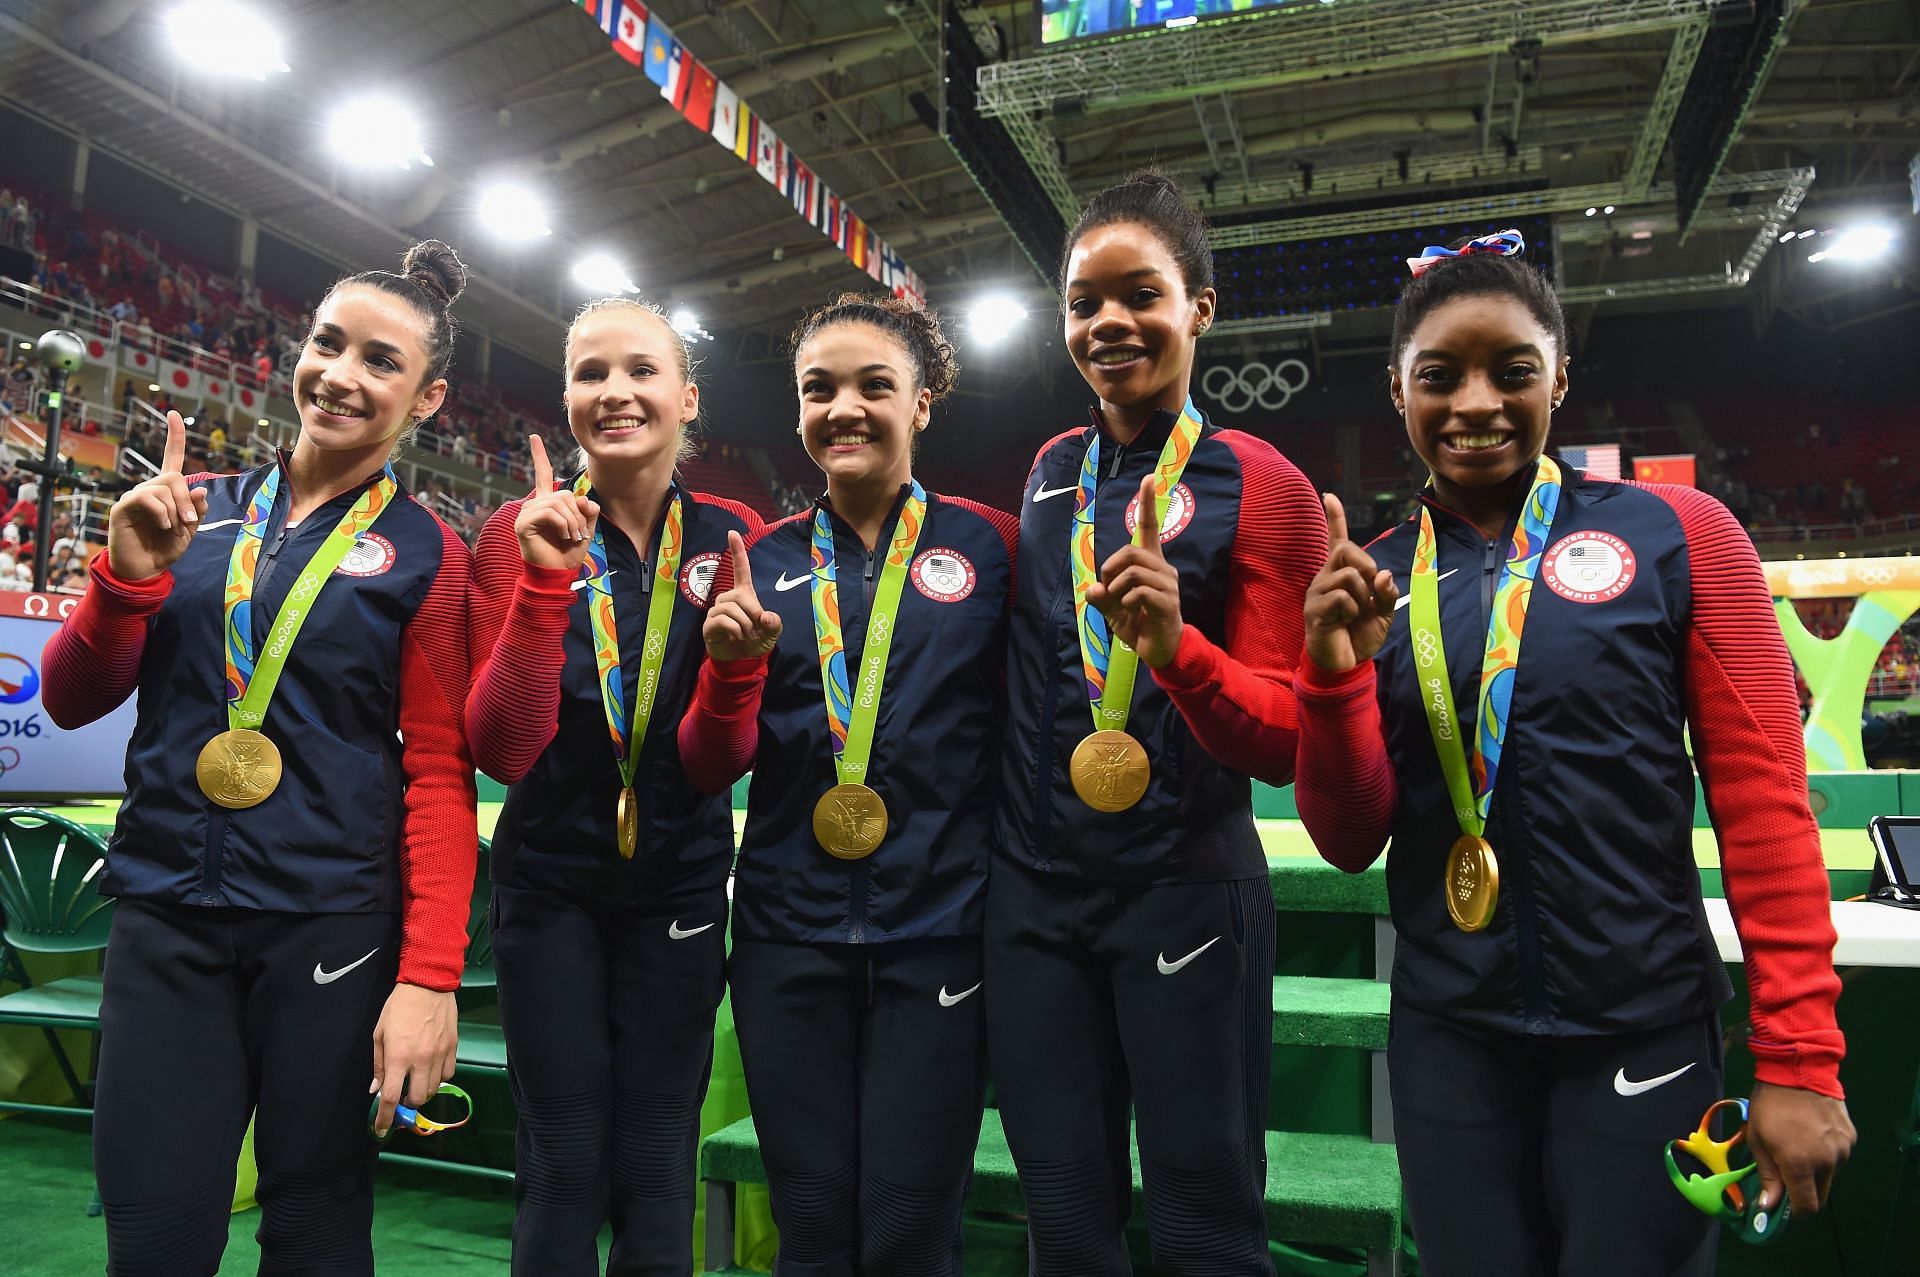 2016 U.S. Olympic Trials, Gymnastics Wiki